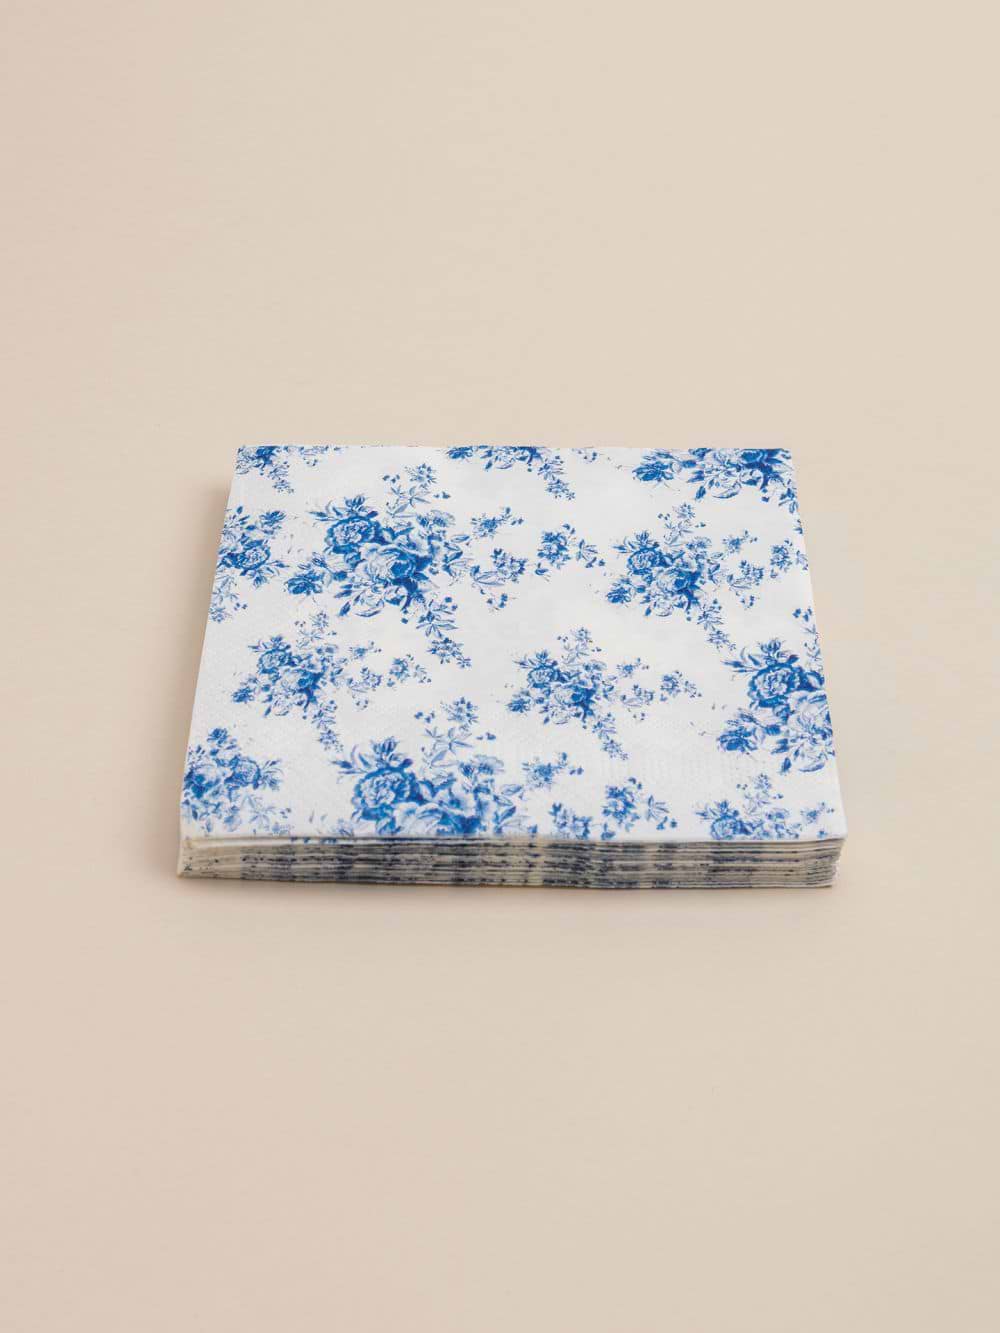 חבילת מפיות בעיצוב פרחים כחולים 16.5X16.5 ס”מ